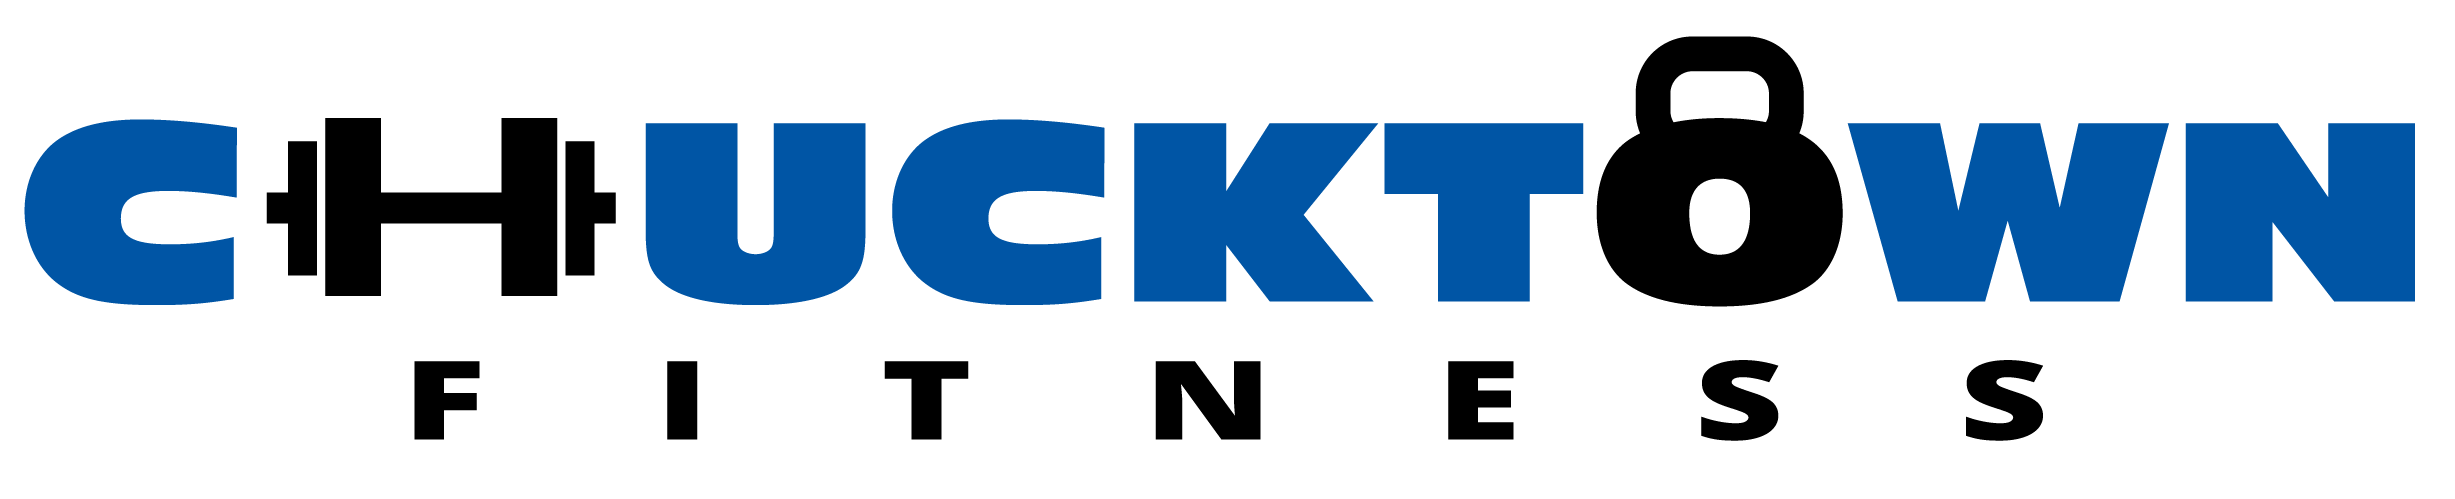 chucktownfitness Logo